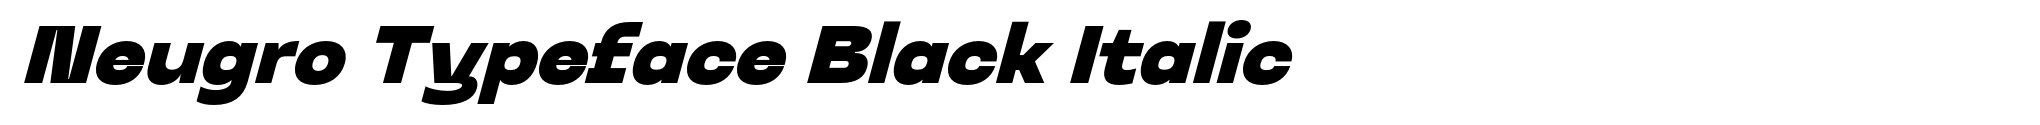 Neugro Typeface Black Italic image